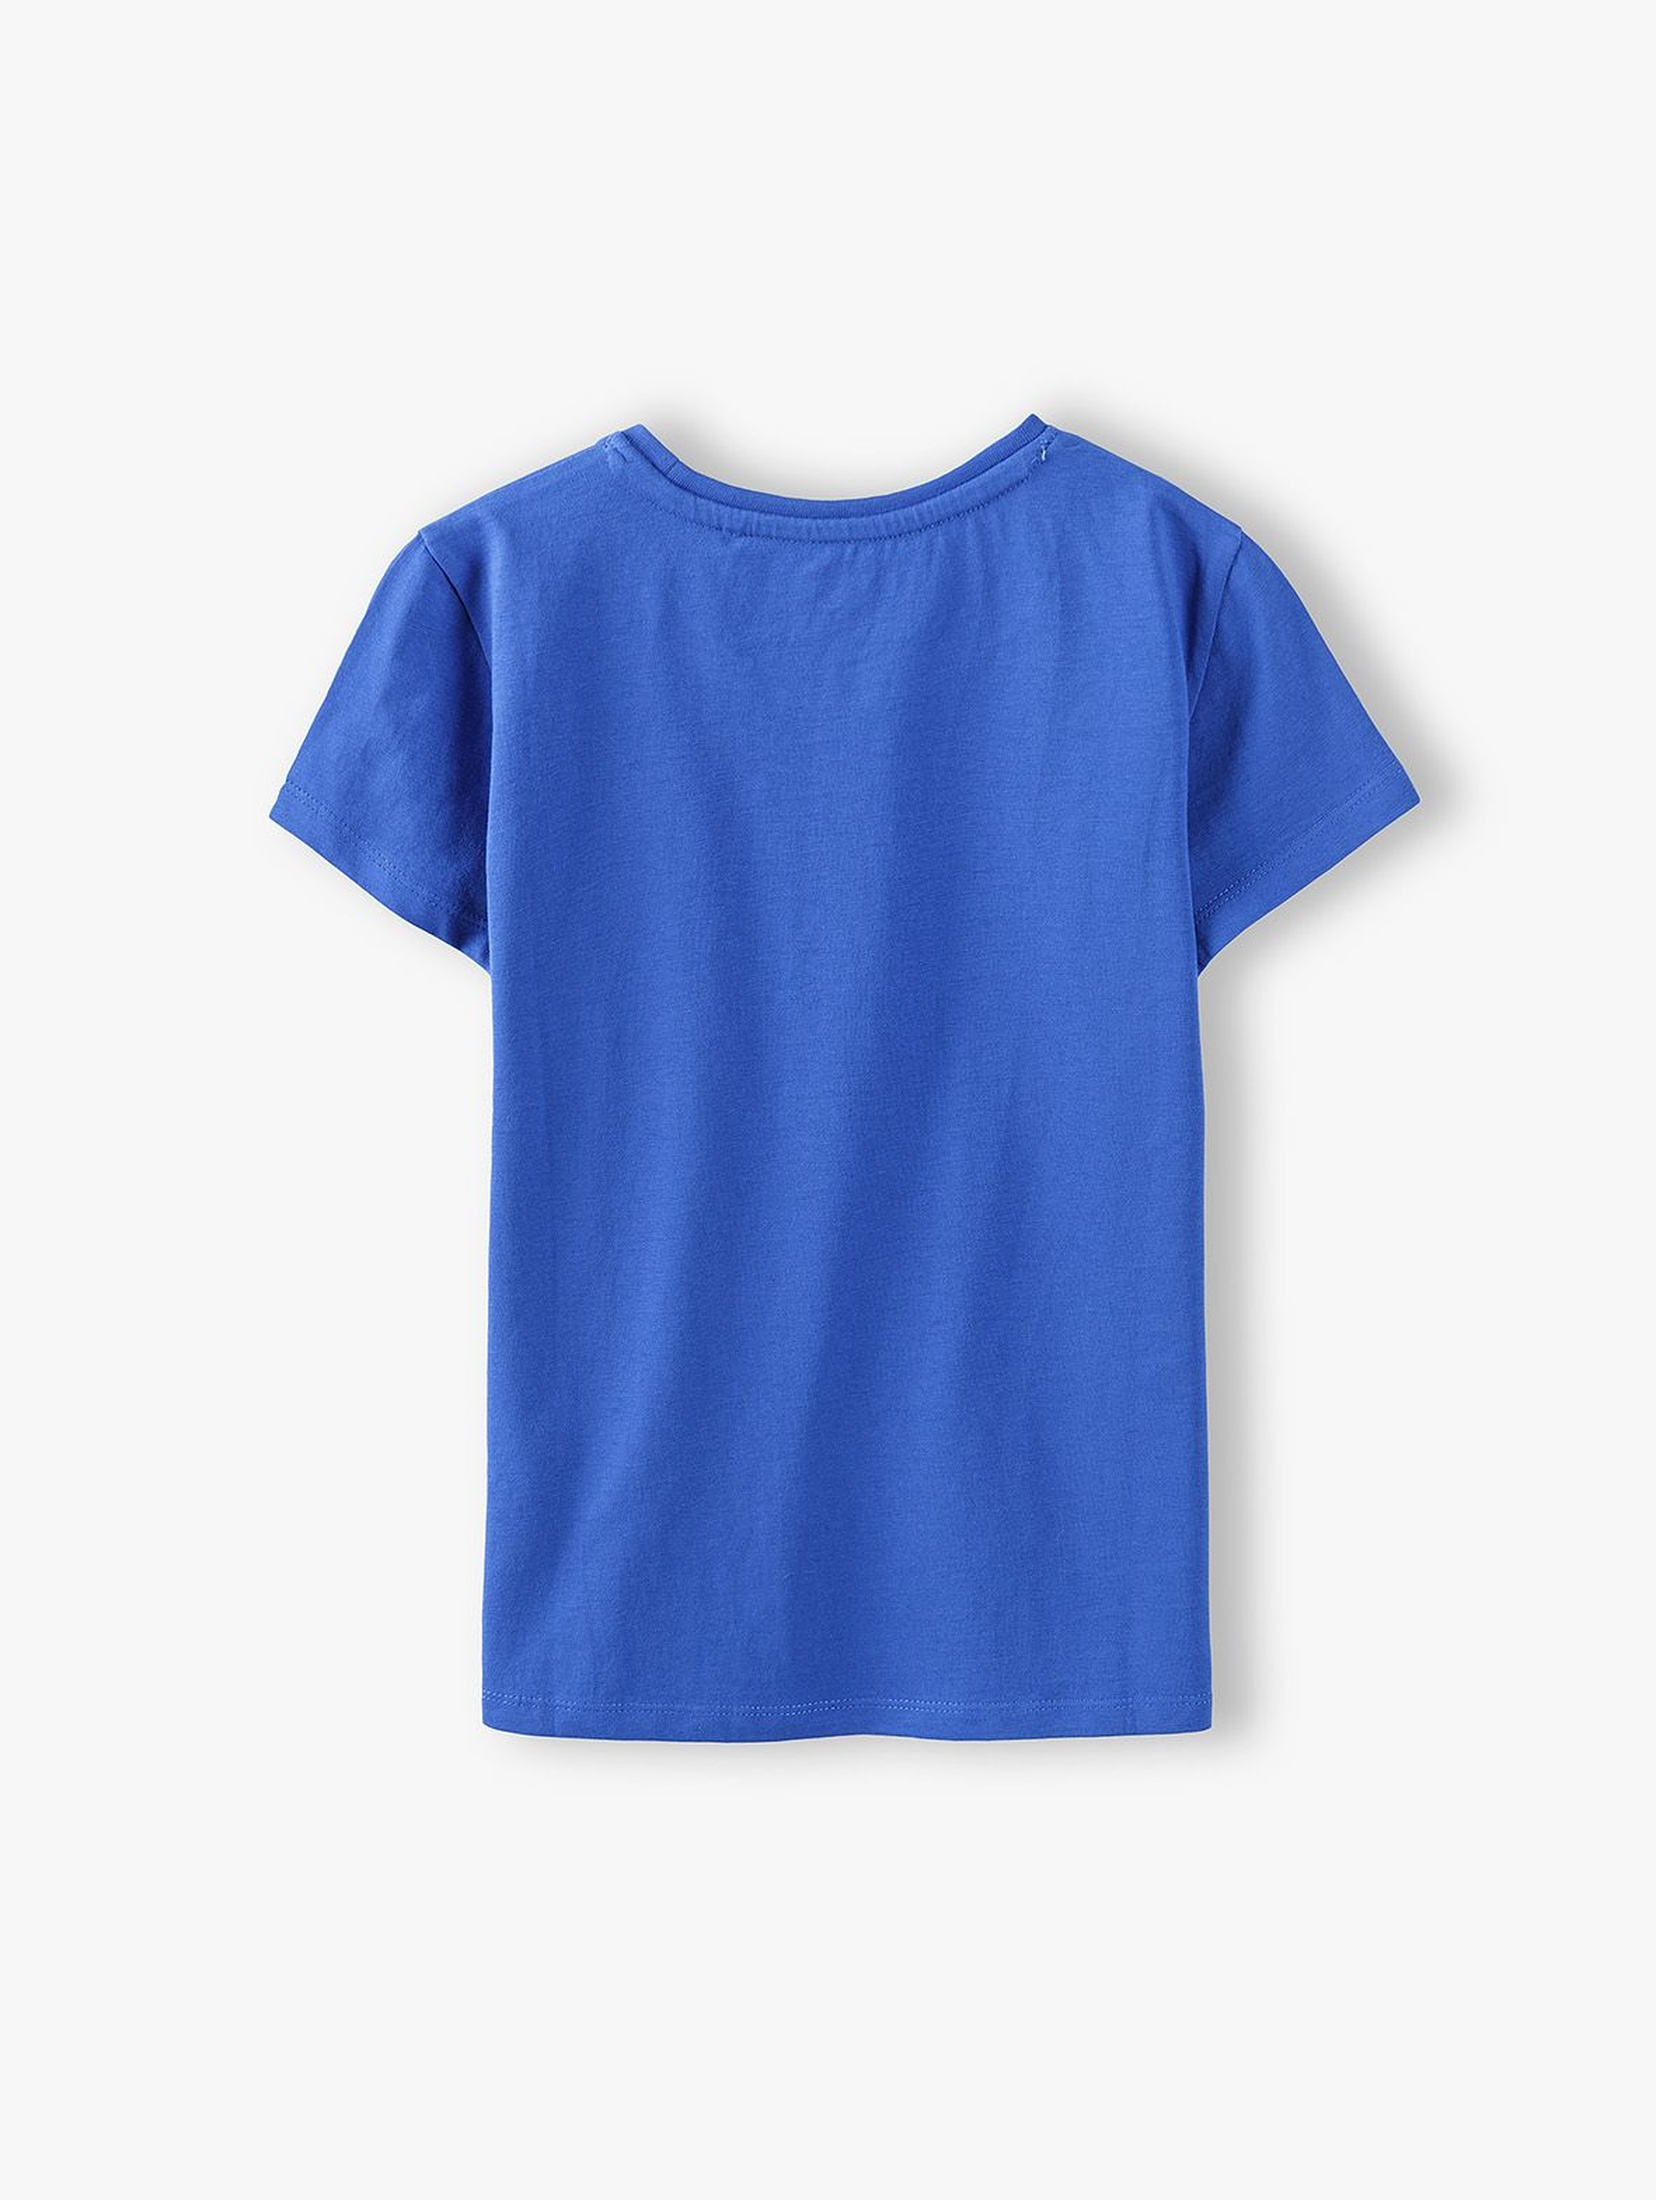 T- shirt dziewczęcy z napisem Vitamin Sea - niebieski